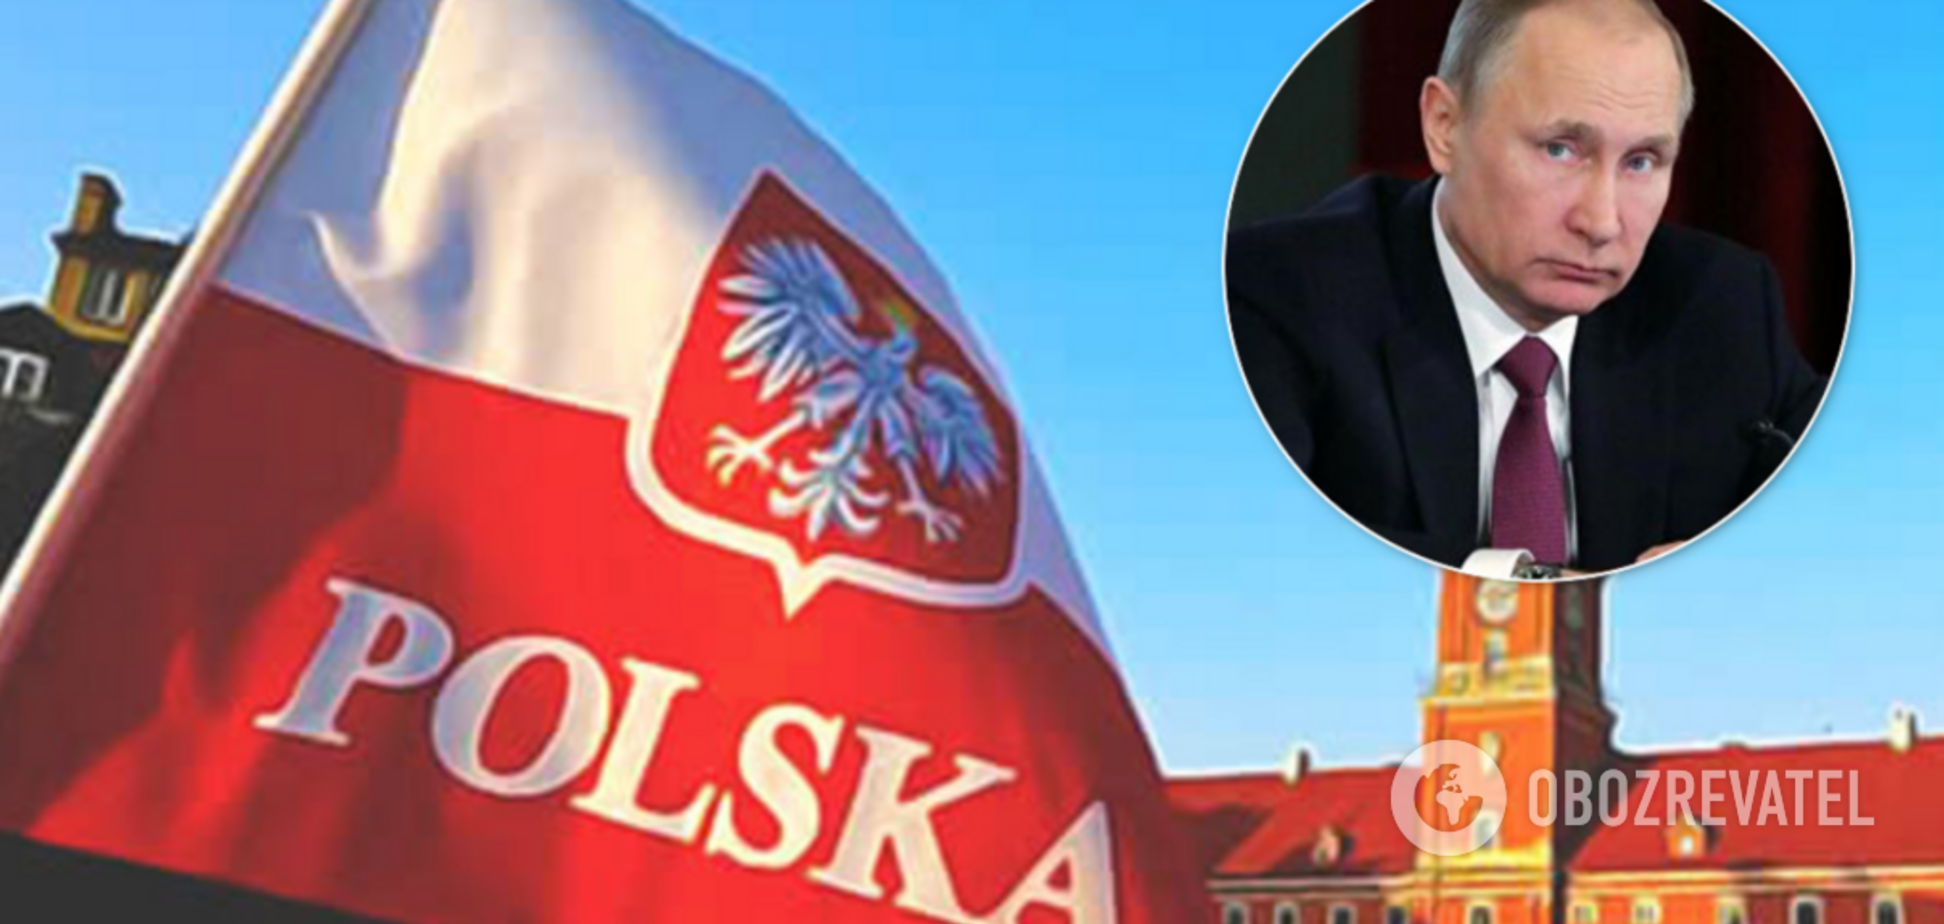 Польша запретит России толковать историю